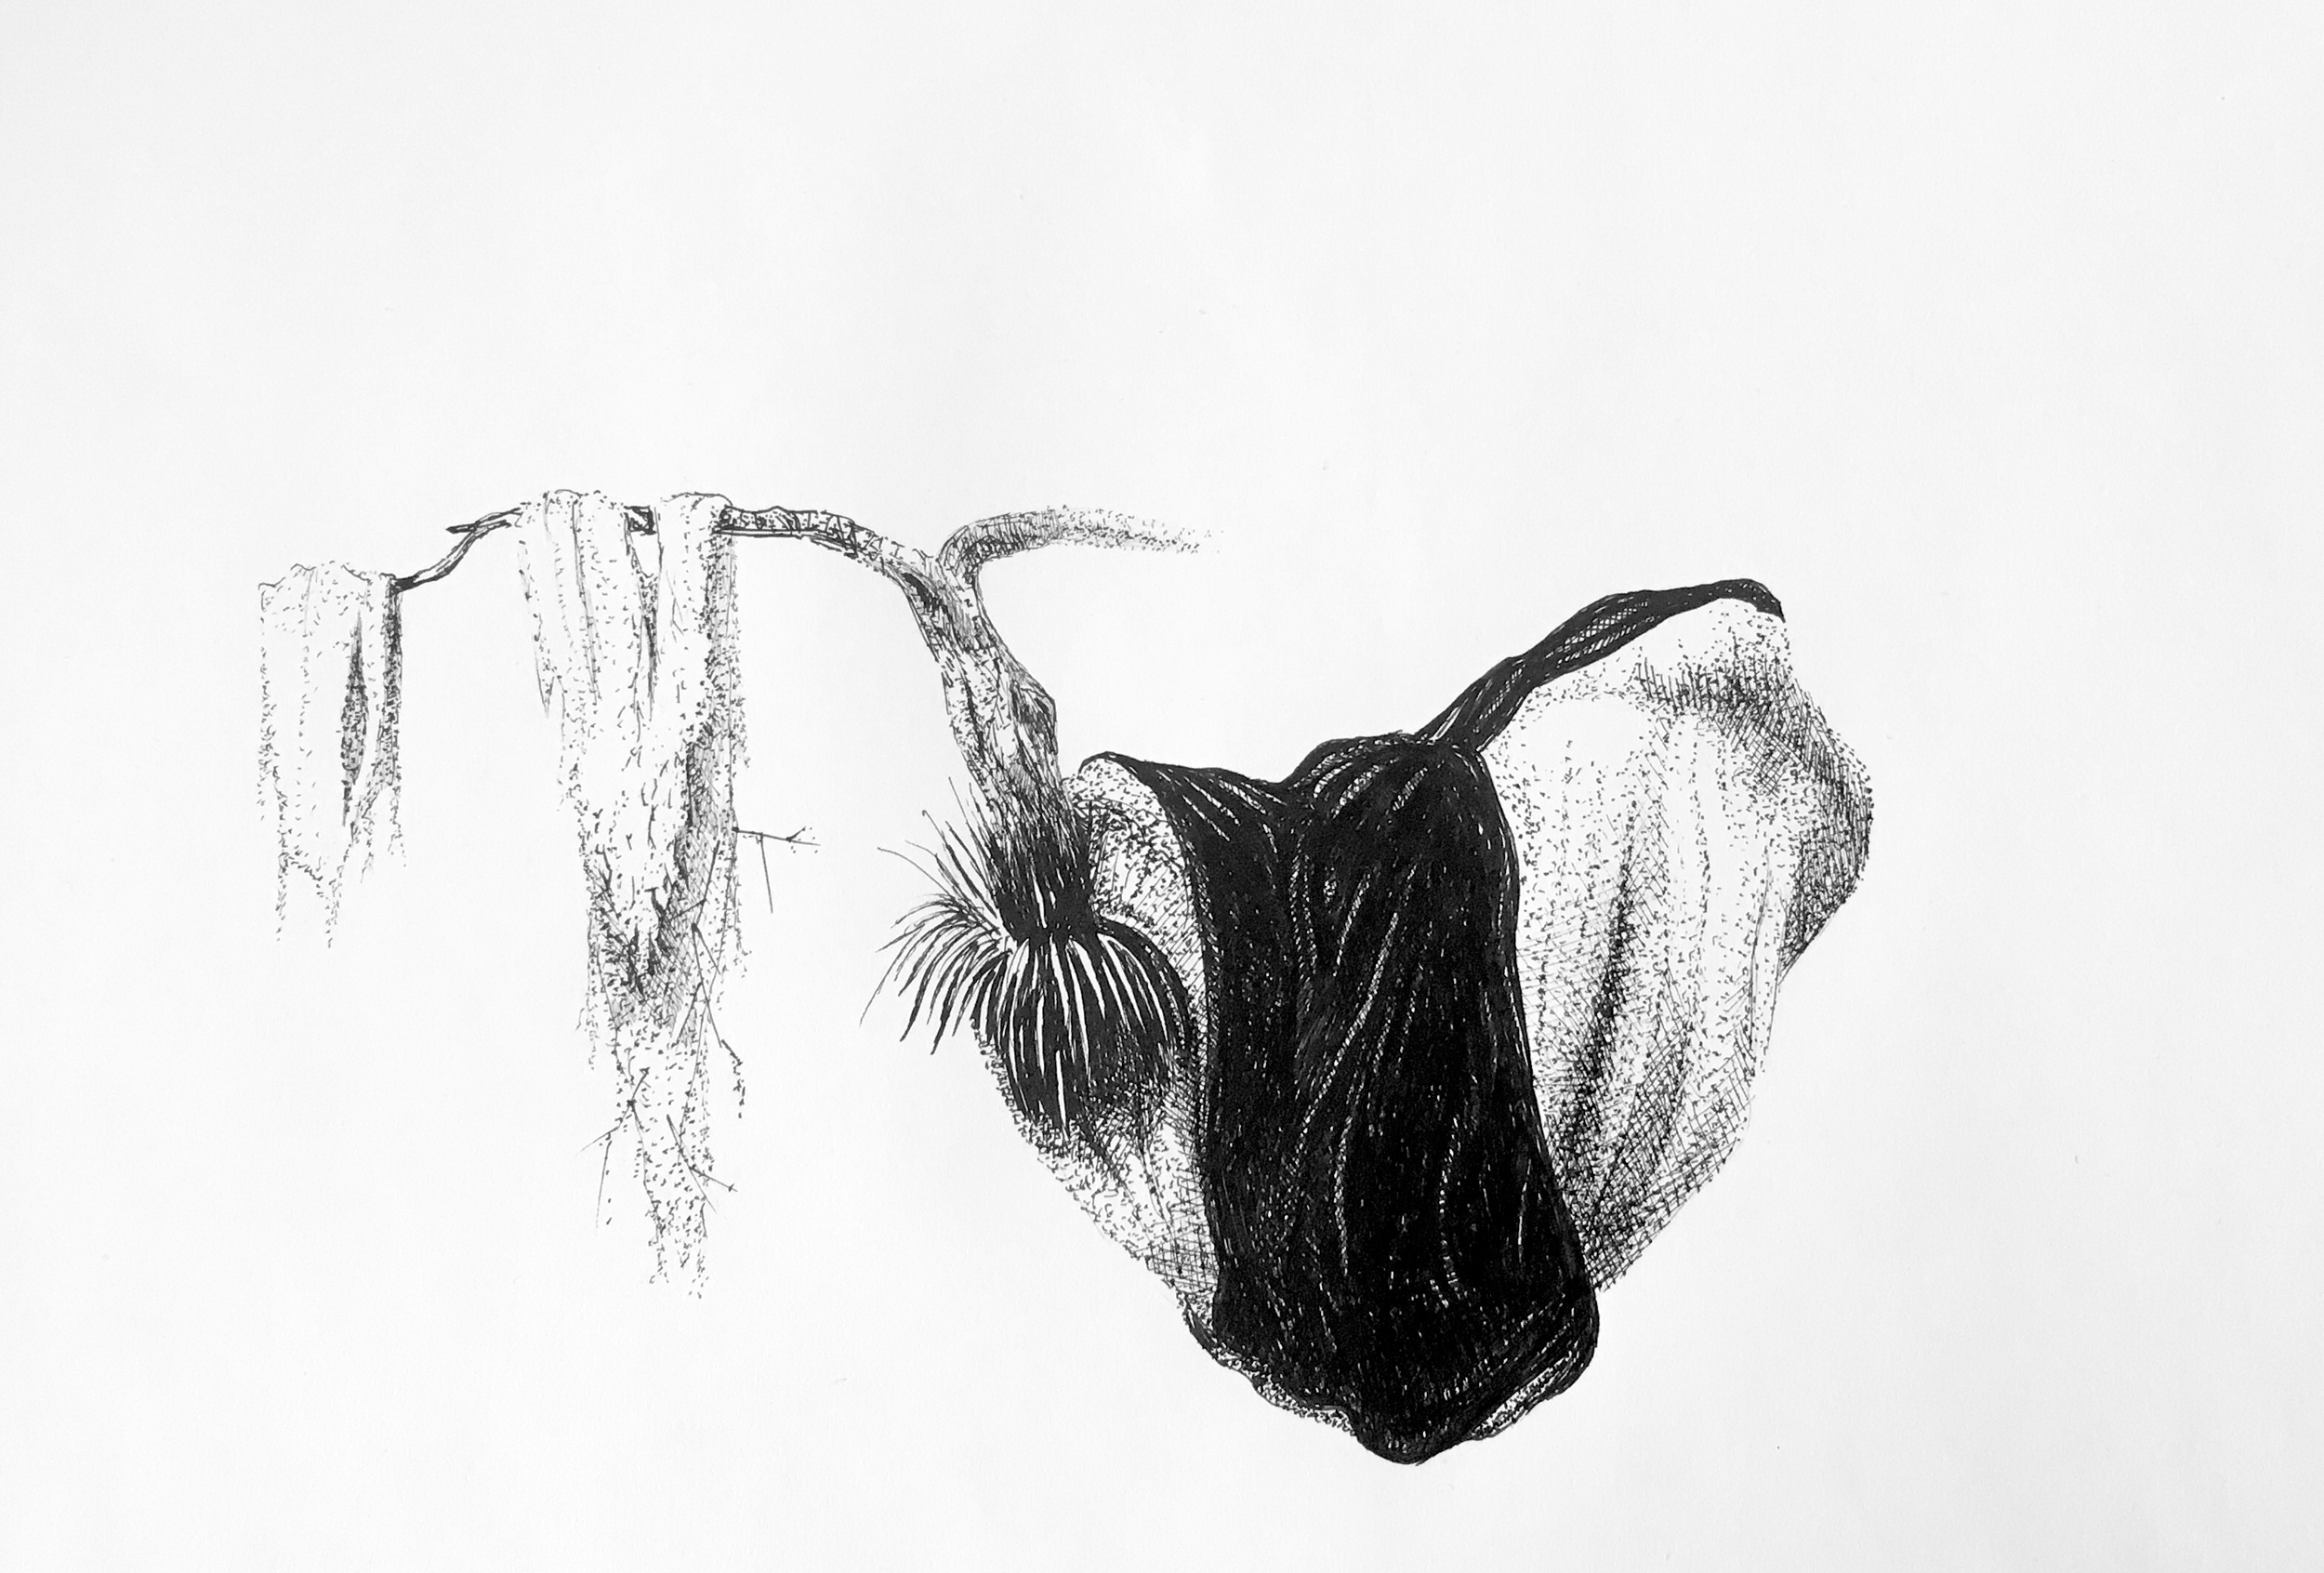 Teckning i svart vitt av ett svävande fantasiföremål med naturinslag.